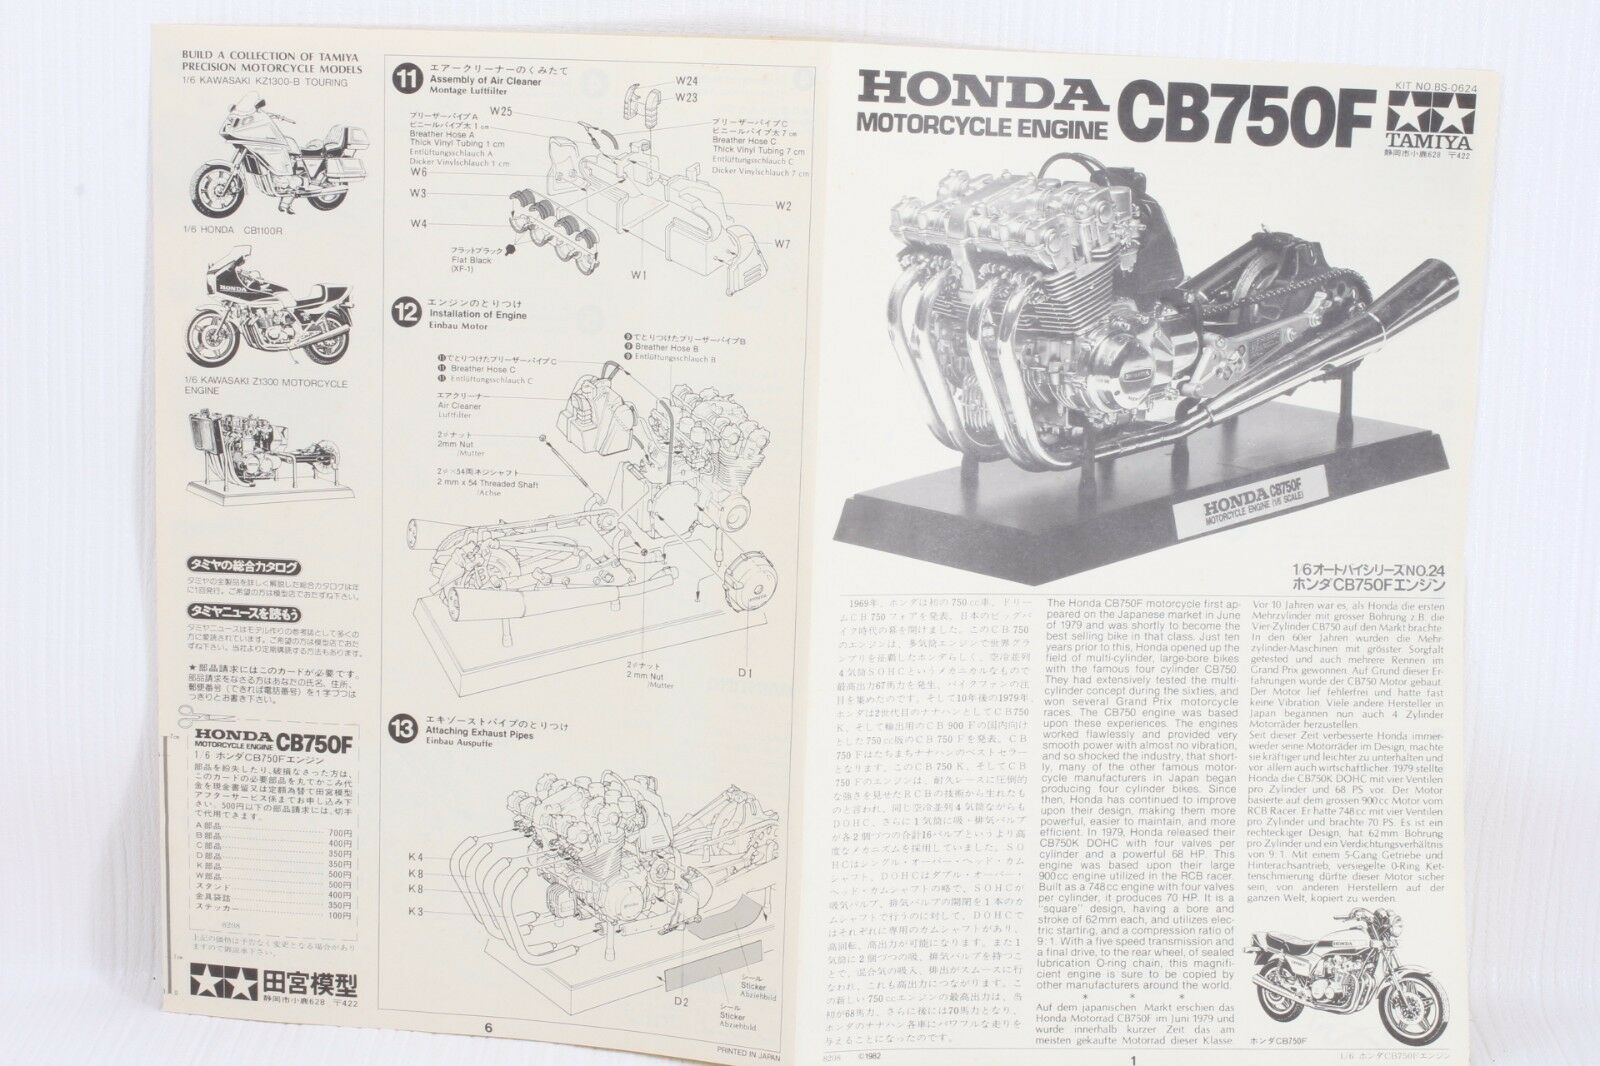 Honda service repair manual download